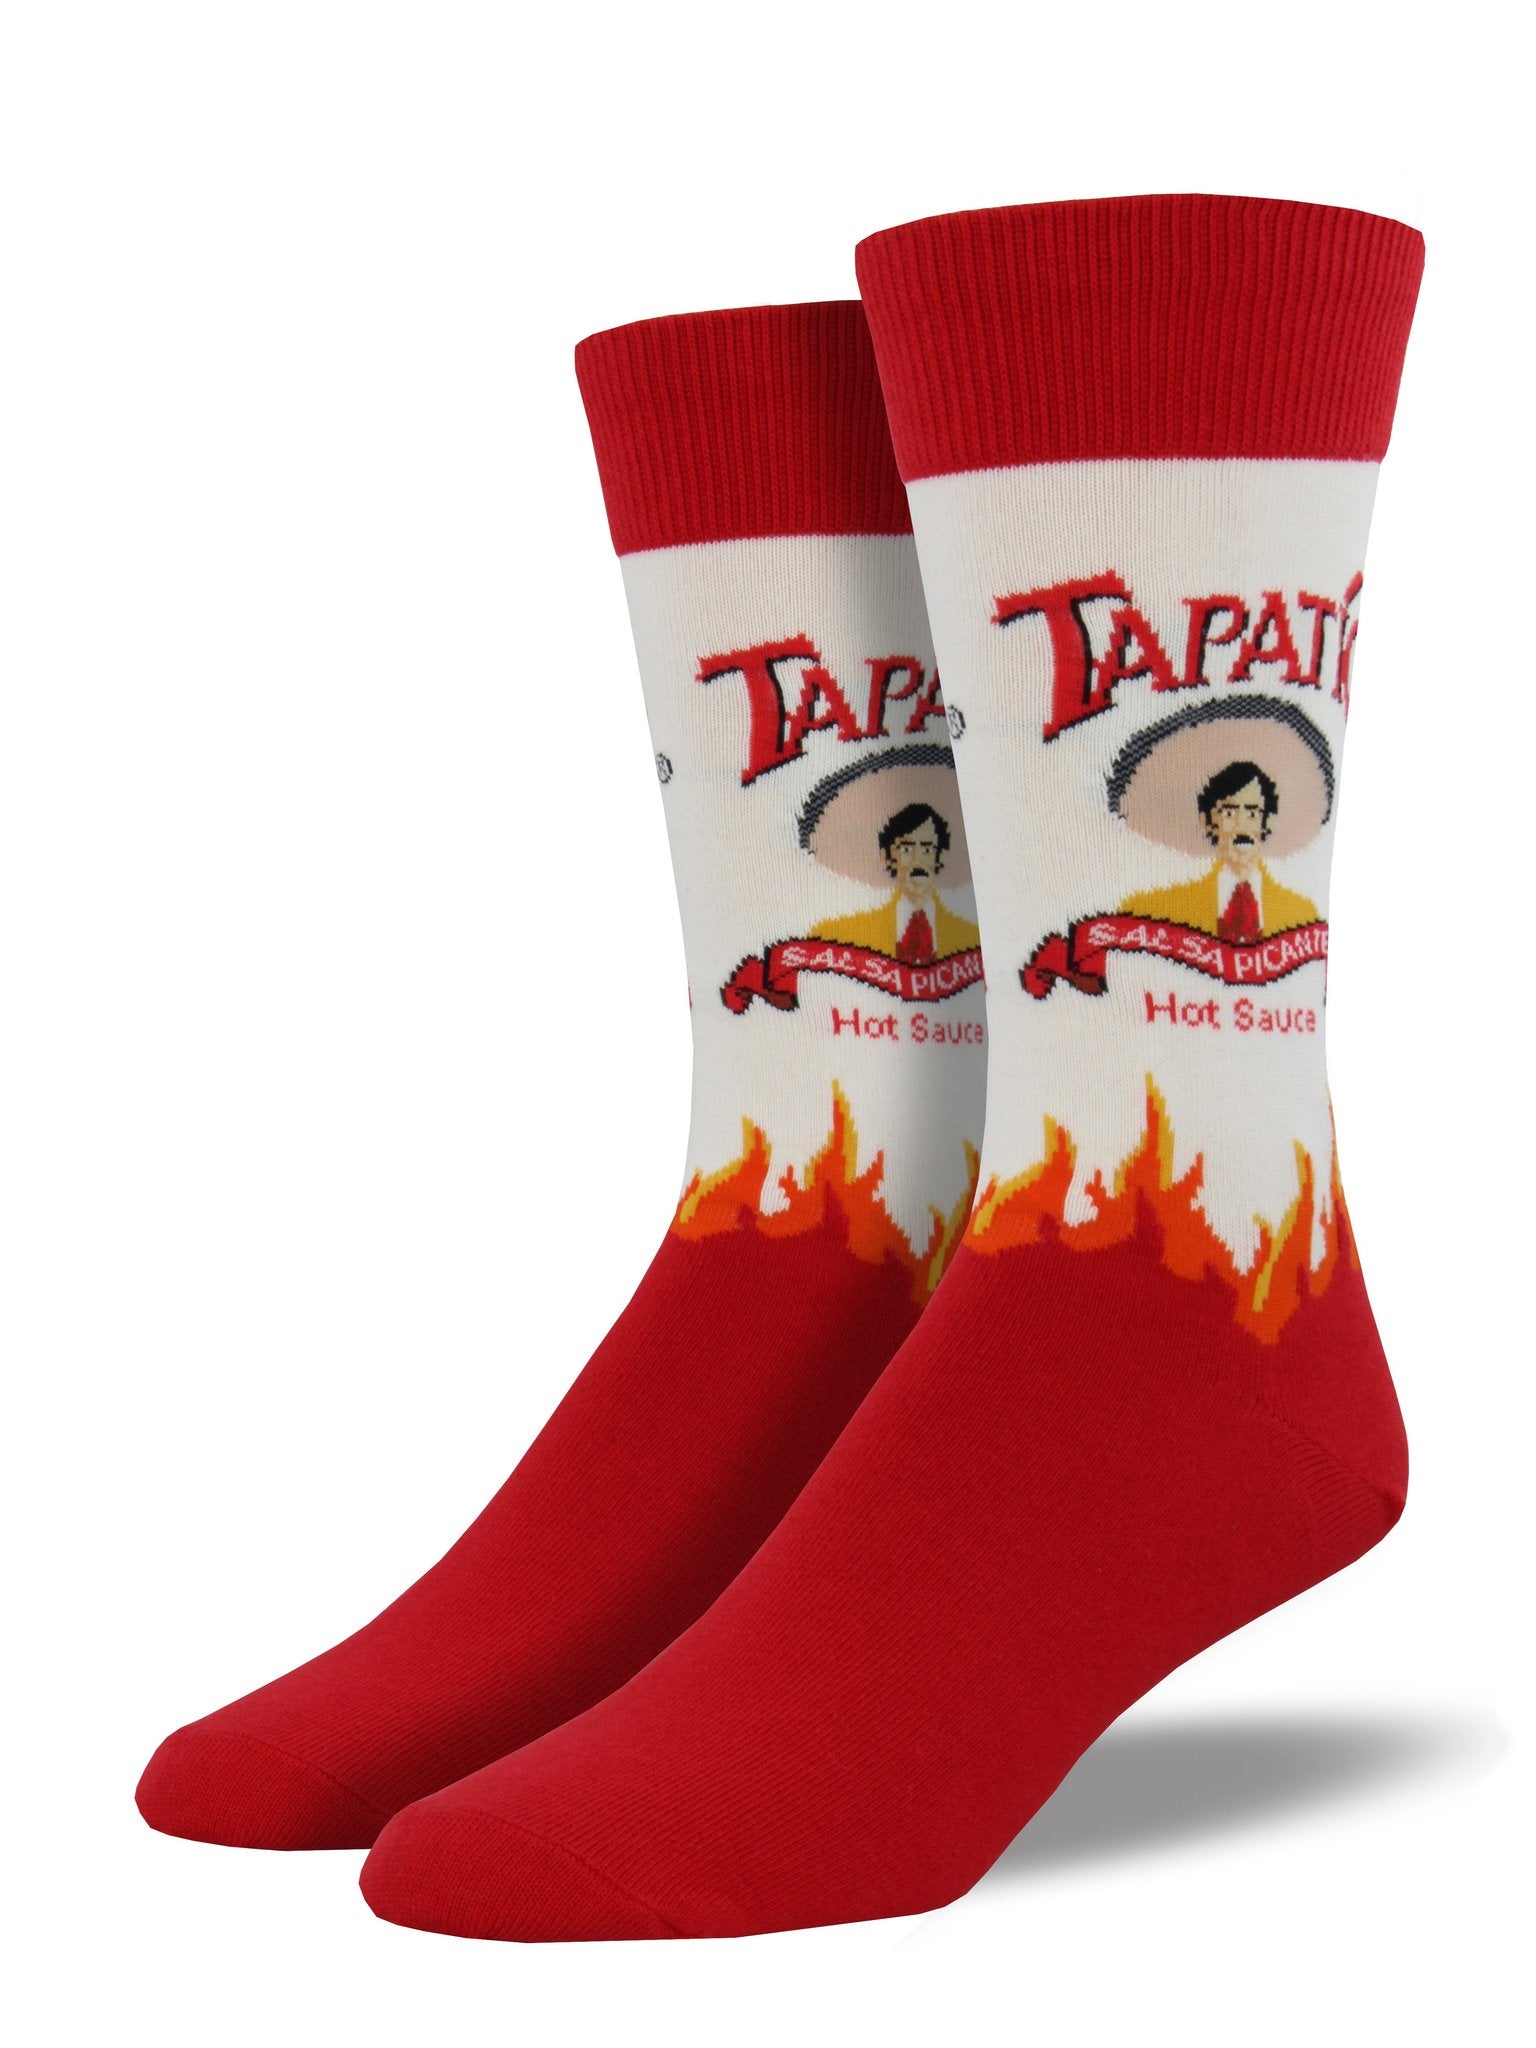 Tapatio Men's Socks